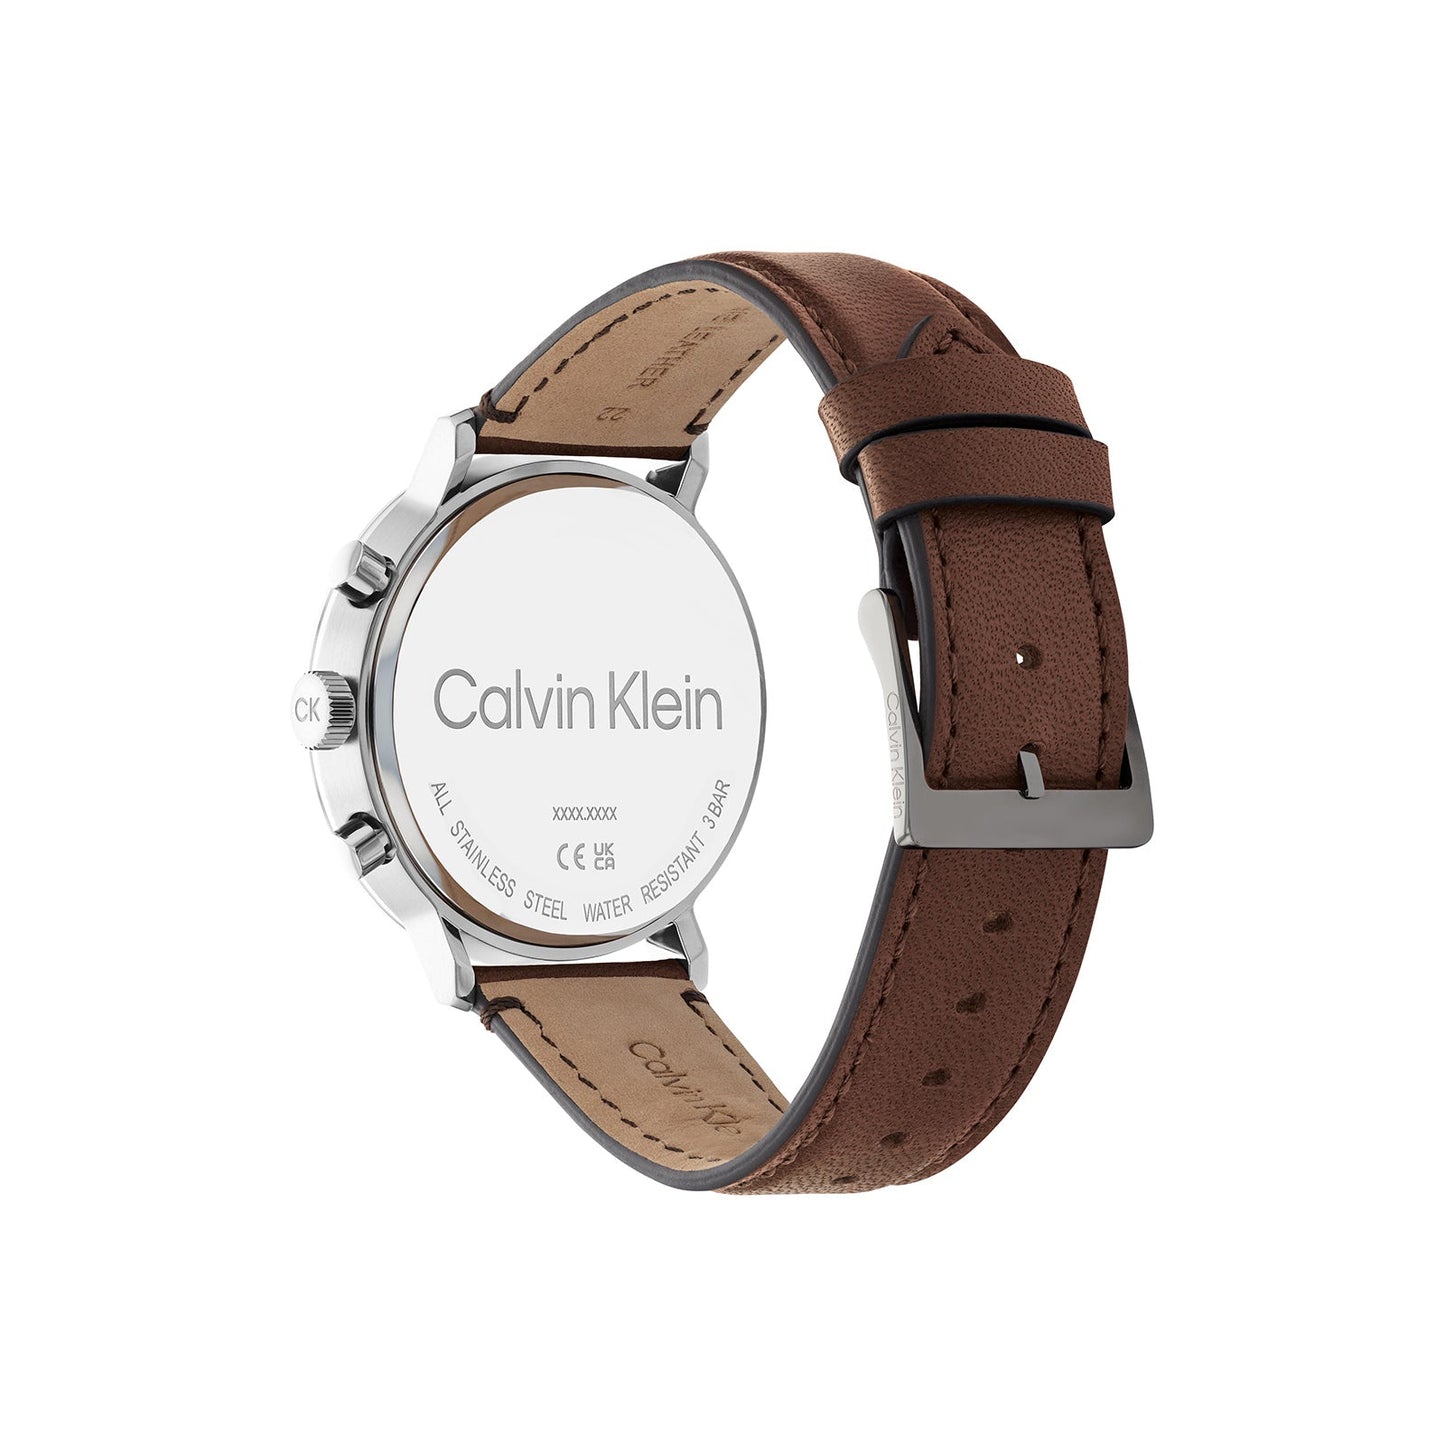 Calvin Klein 25200112 Men's Leather Watch